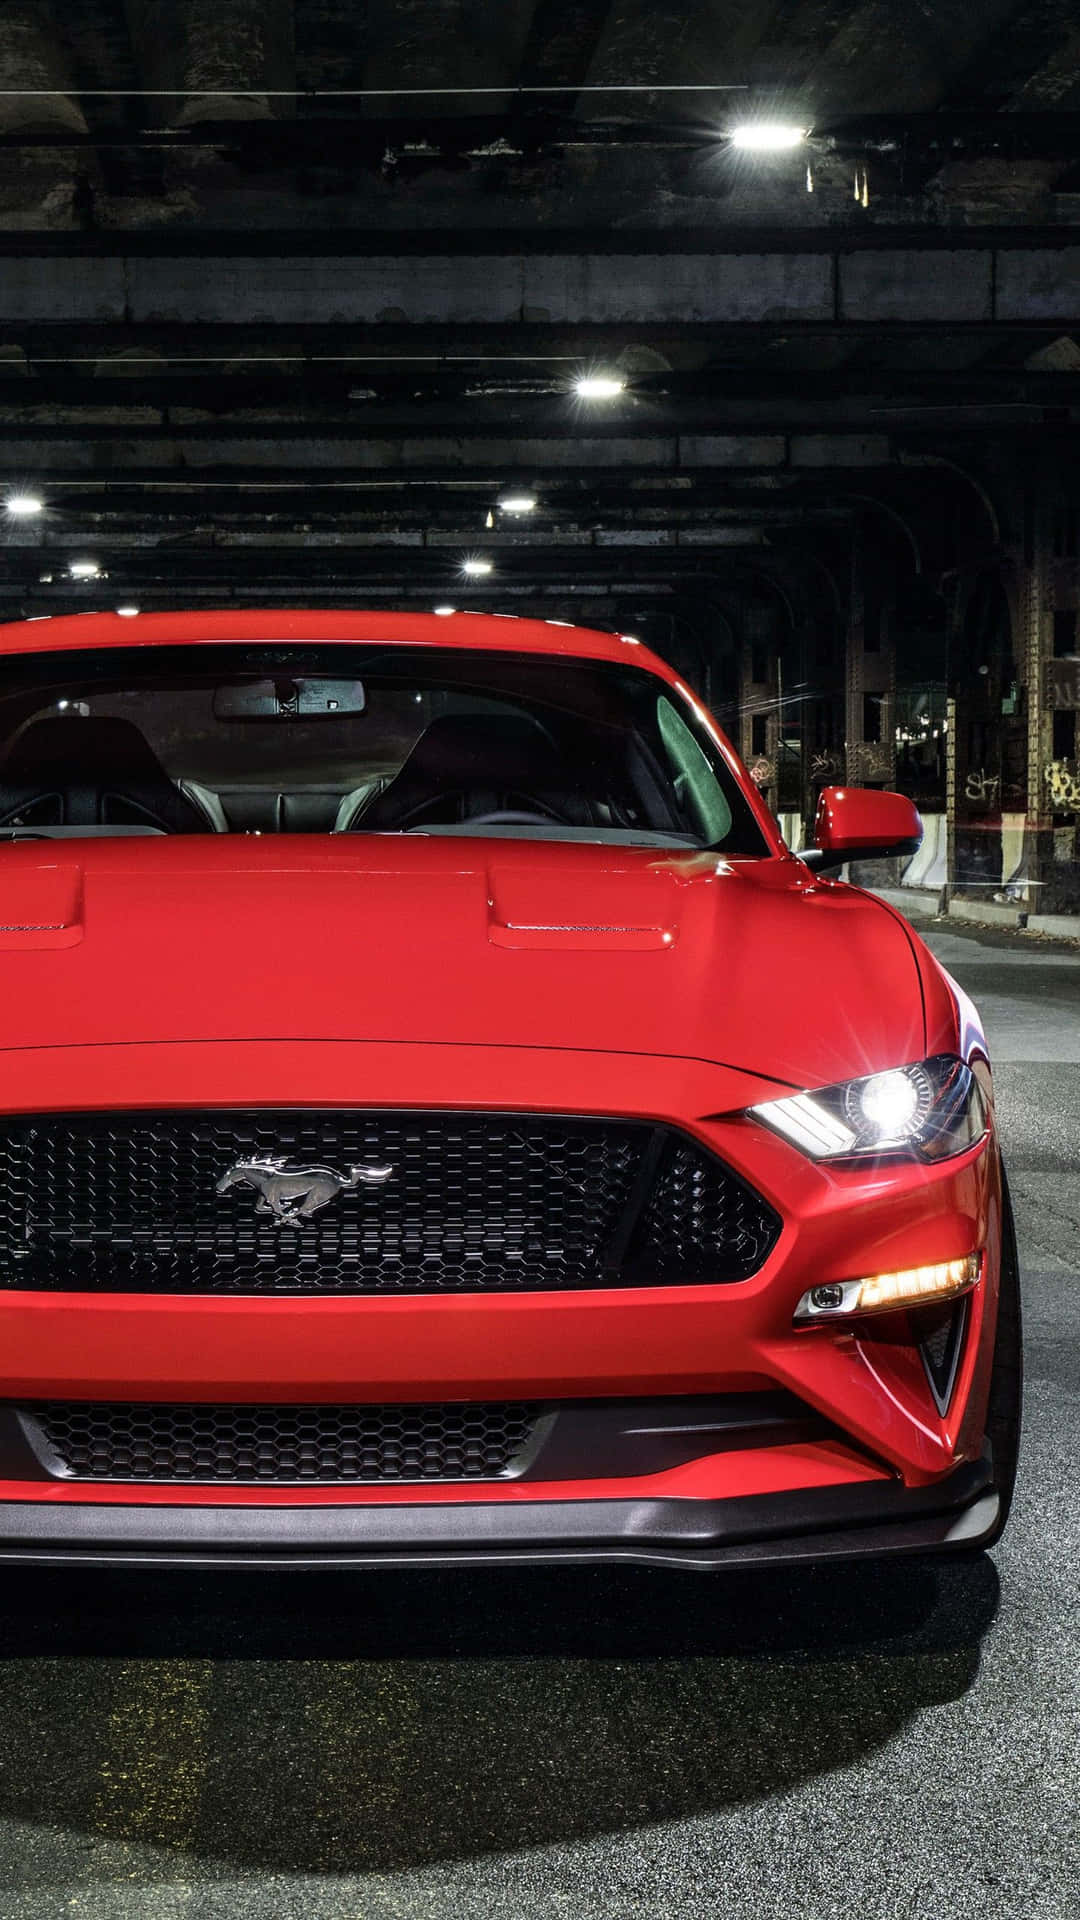 Derrote 2019 Ford Mustang Gt Steht In Einer Garage. Wallpaper